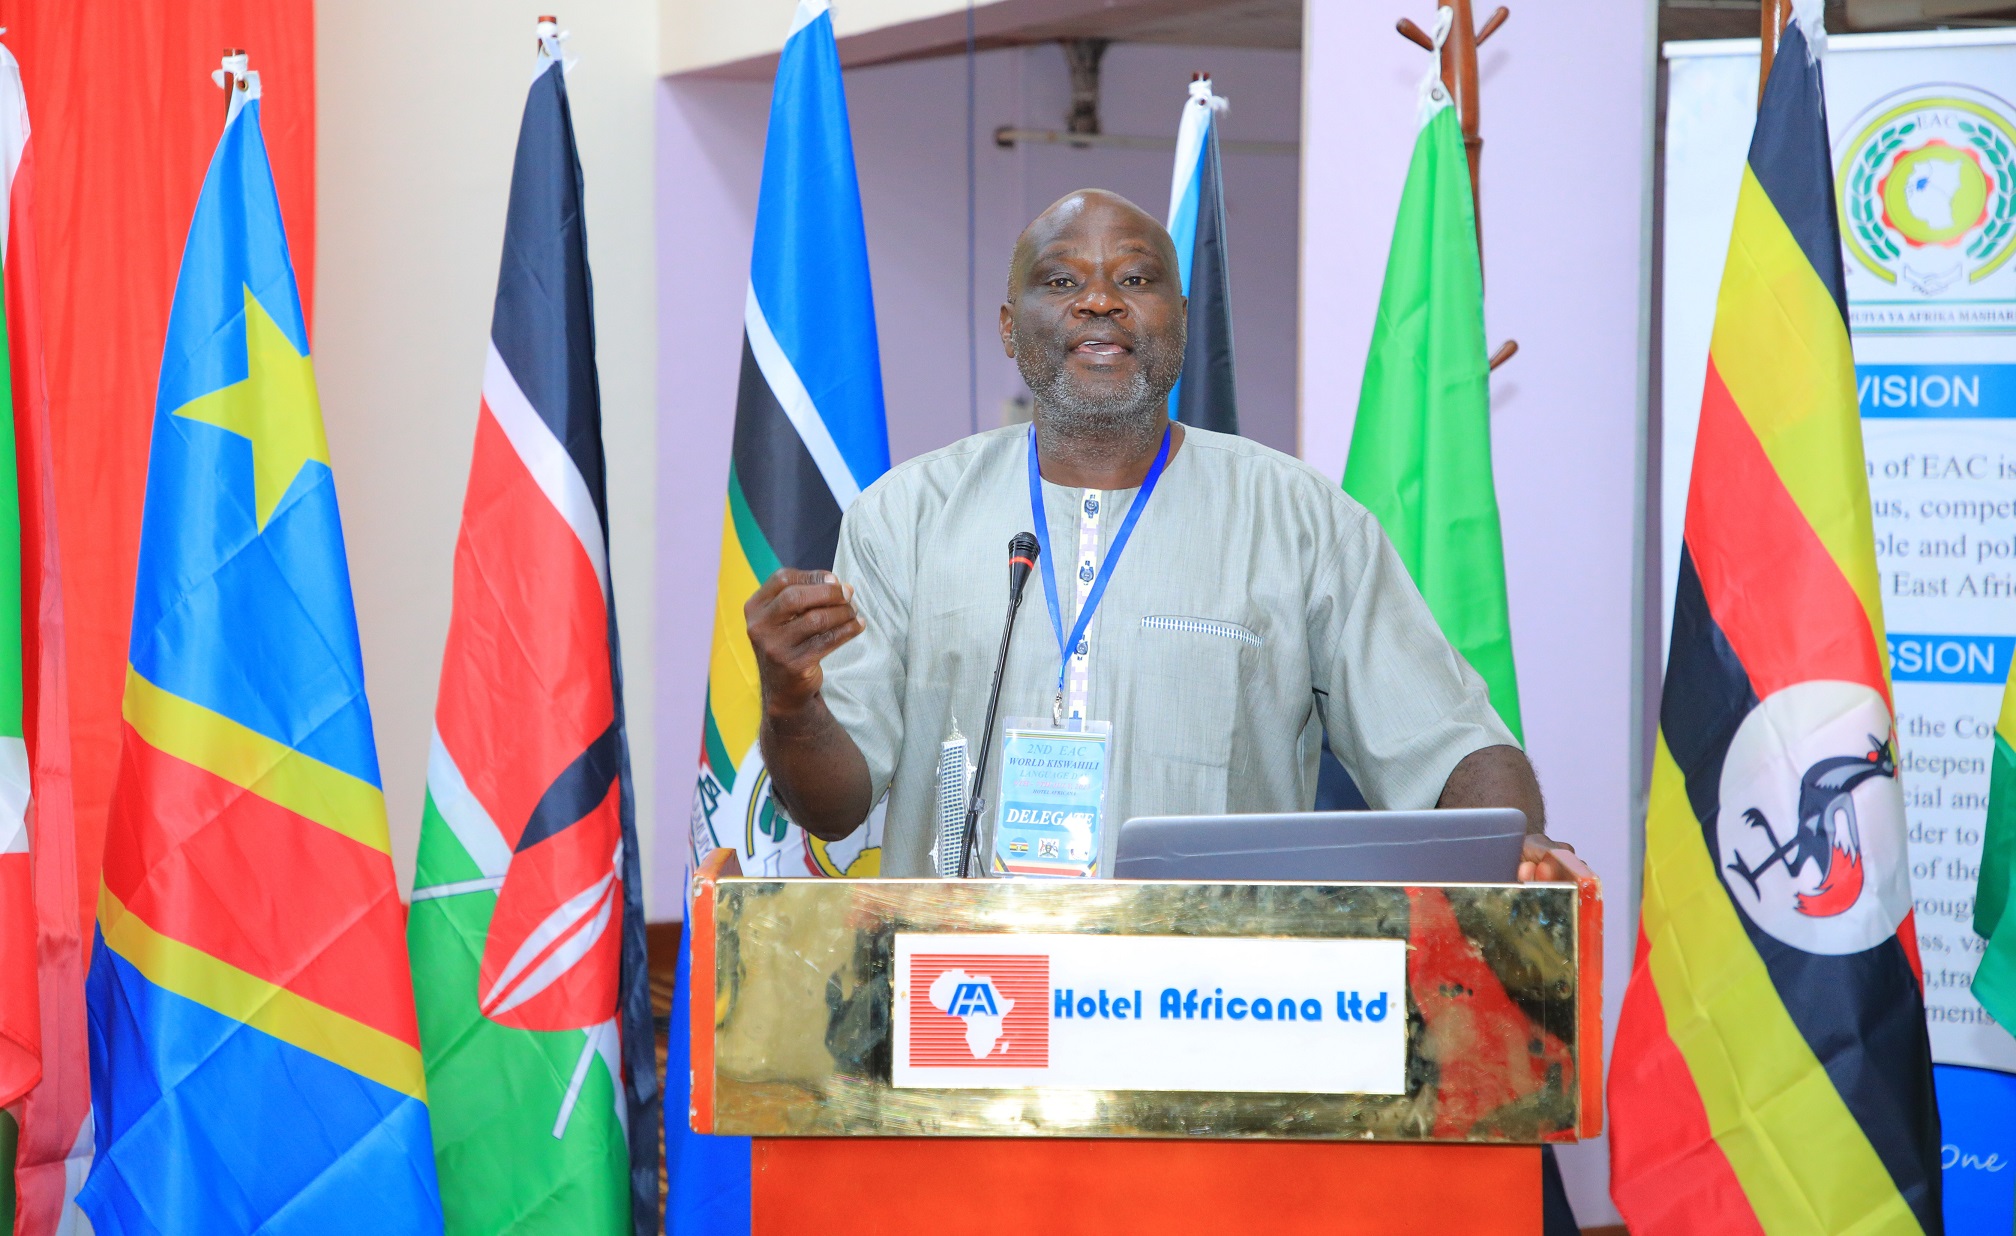 Prof. Kenneth Simala of Masinde Muliro University, Kakamega, Kenya making a presentation on ‘Kiswahili, Multilingualism and Pan-Africanism’ during a symposium to mark the 2nd EAC World Kiswahili Day in Kampala.